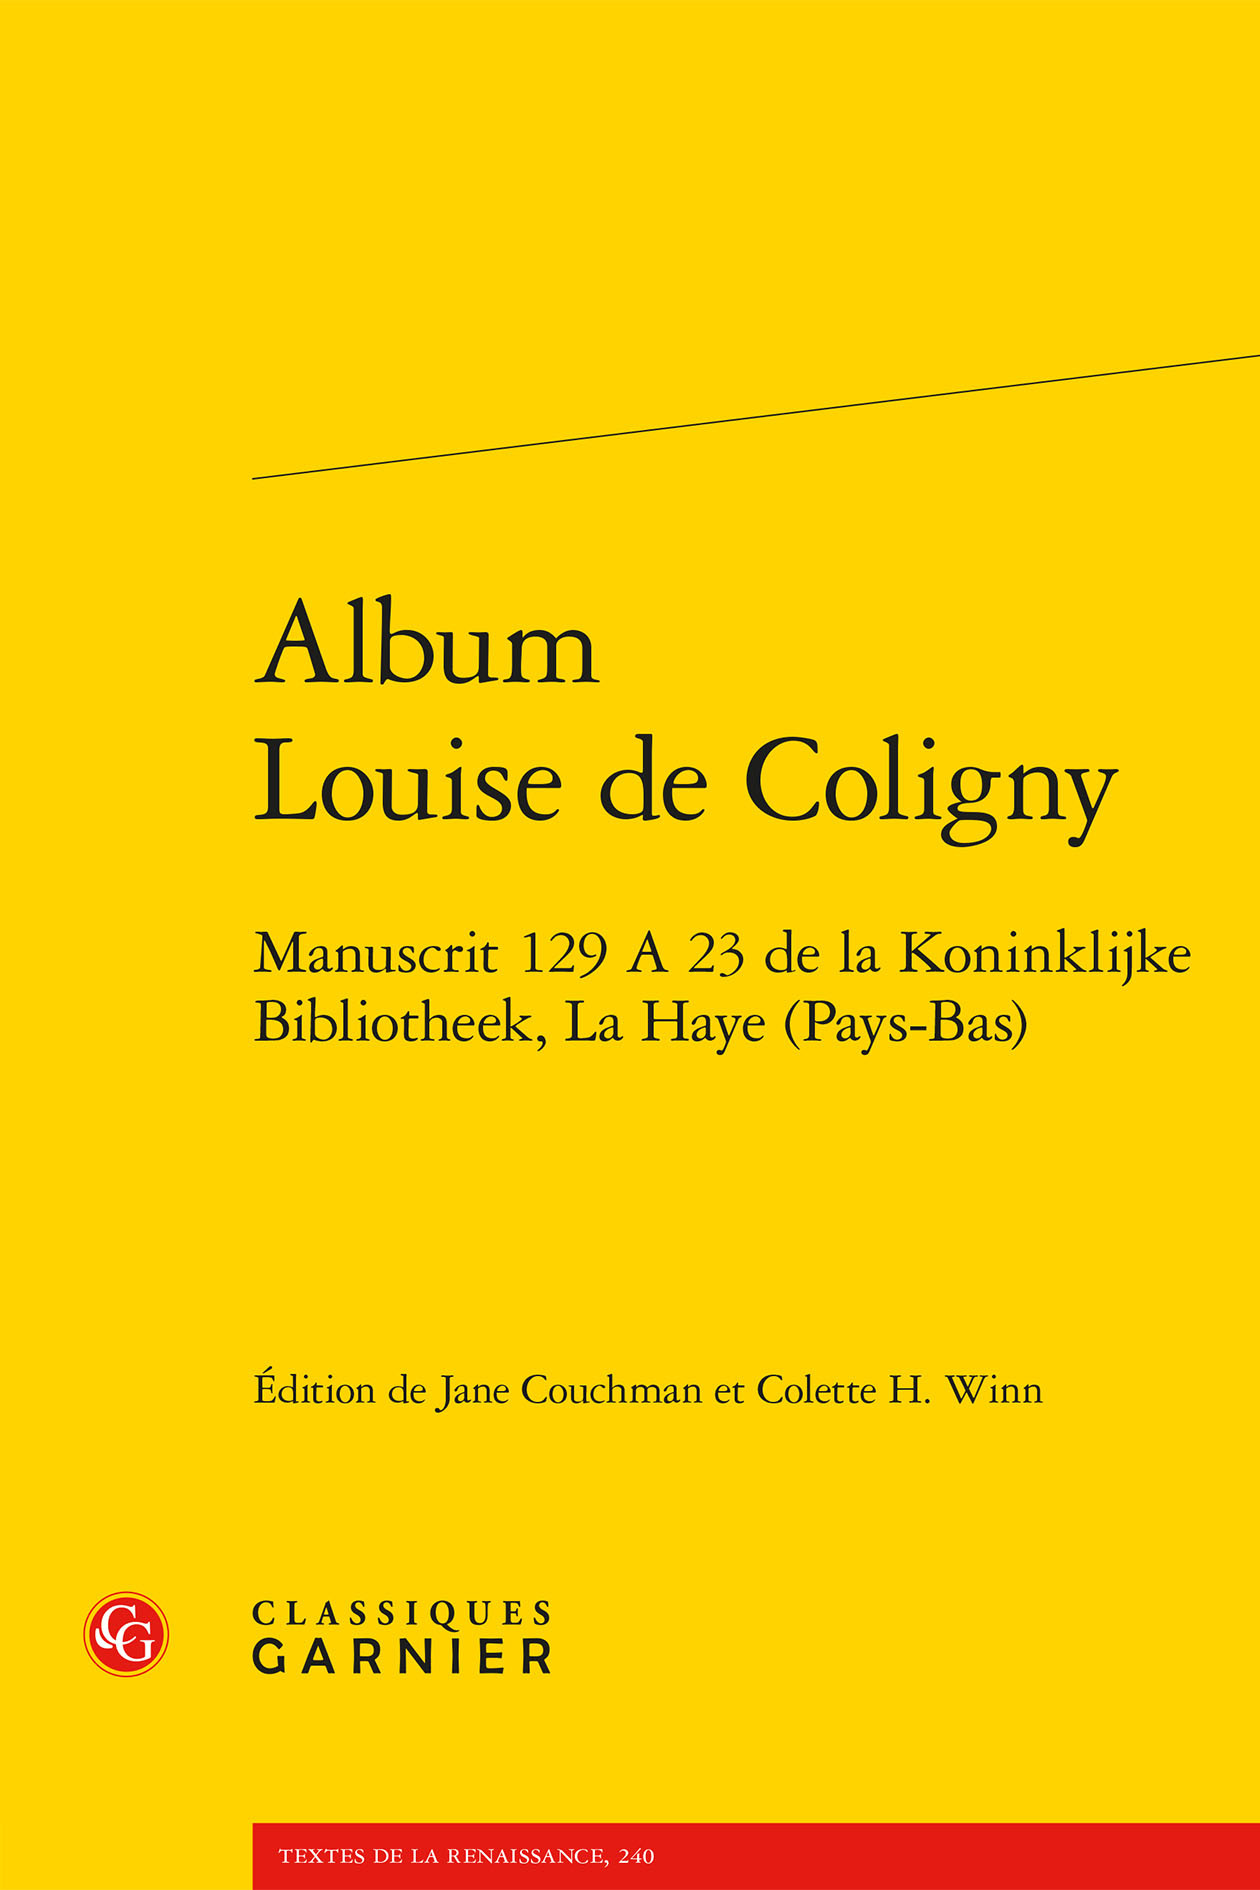 Album Louise de Coligny, Manuscrit 129 A 23 de la Koninklijke Bibliotheek, La Haye (Pays-Bas) (9782406119739-front-cover)